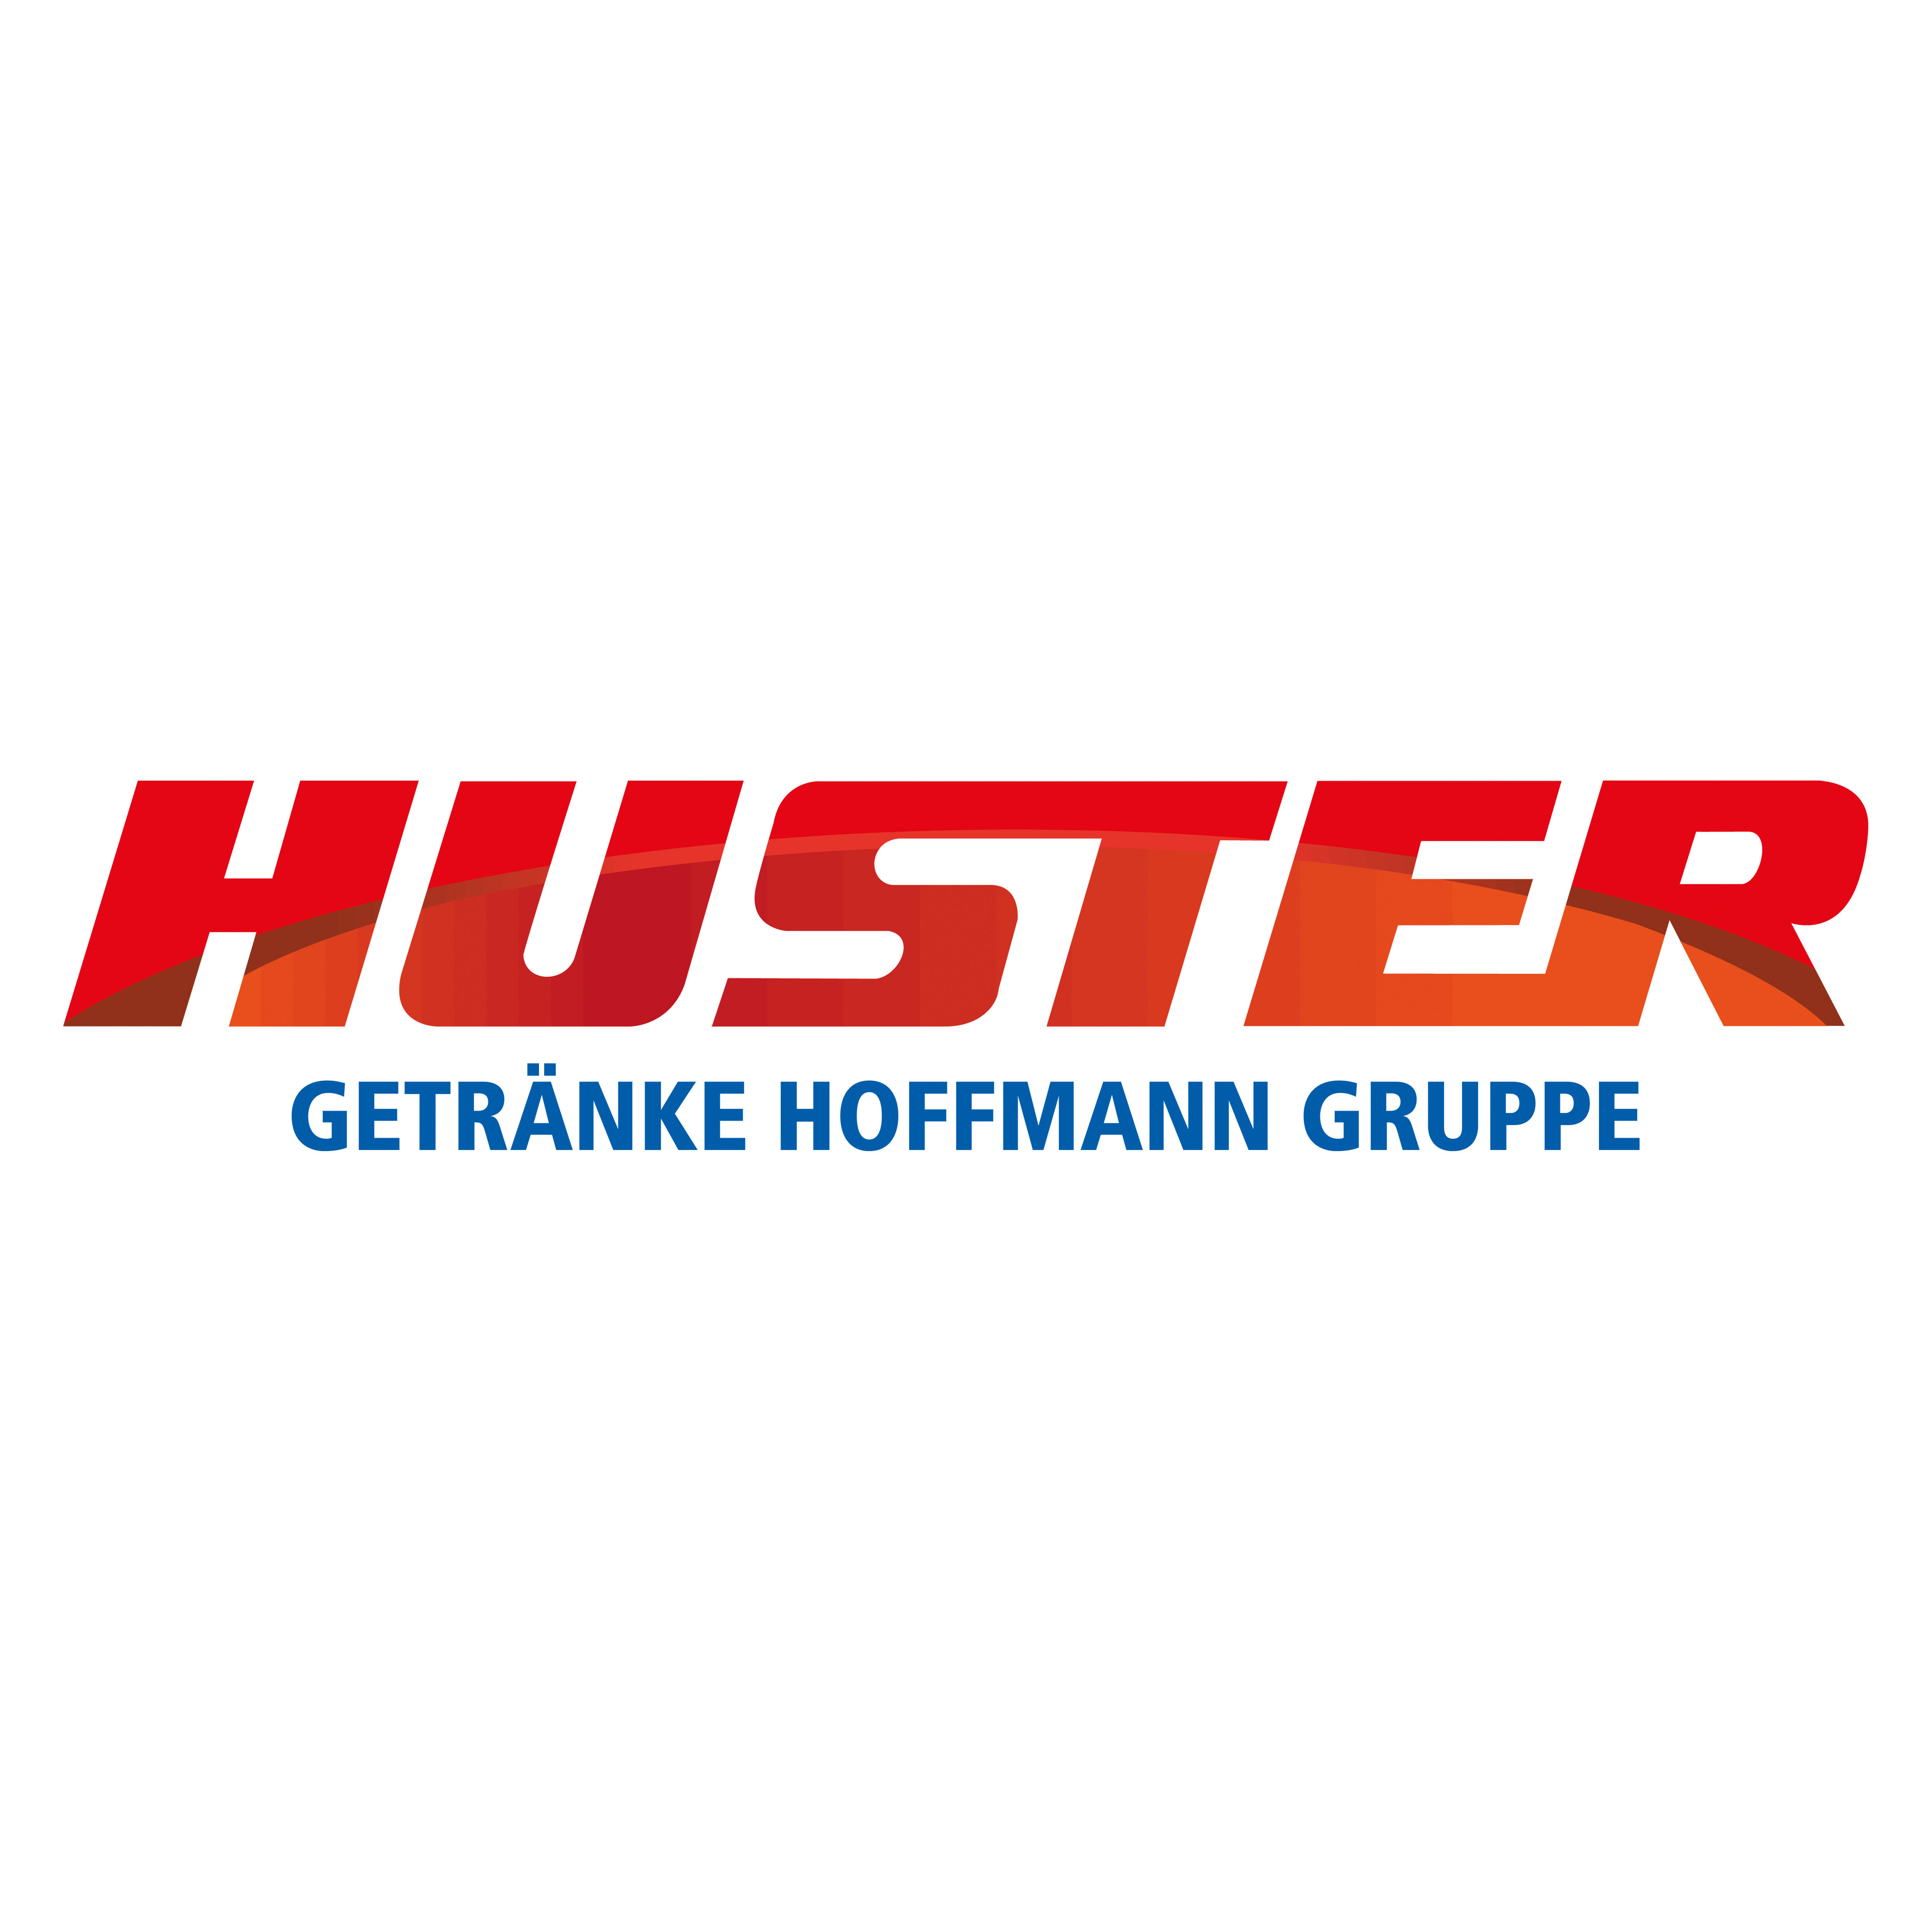 Huster | Getränke Hoffmann Gruppe Logo